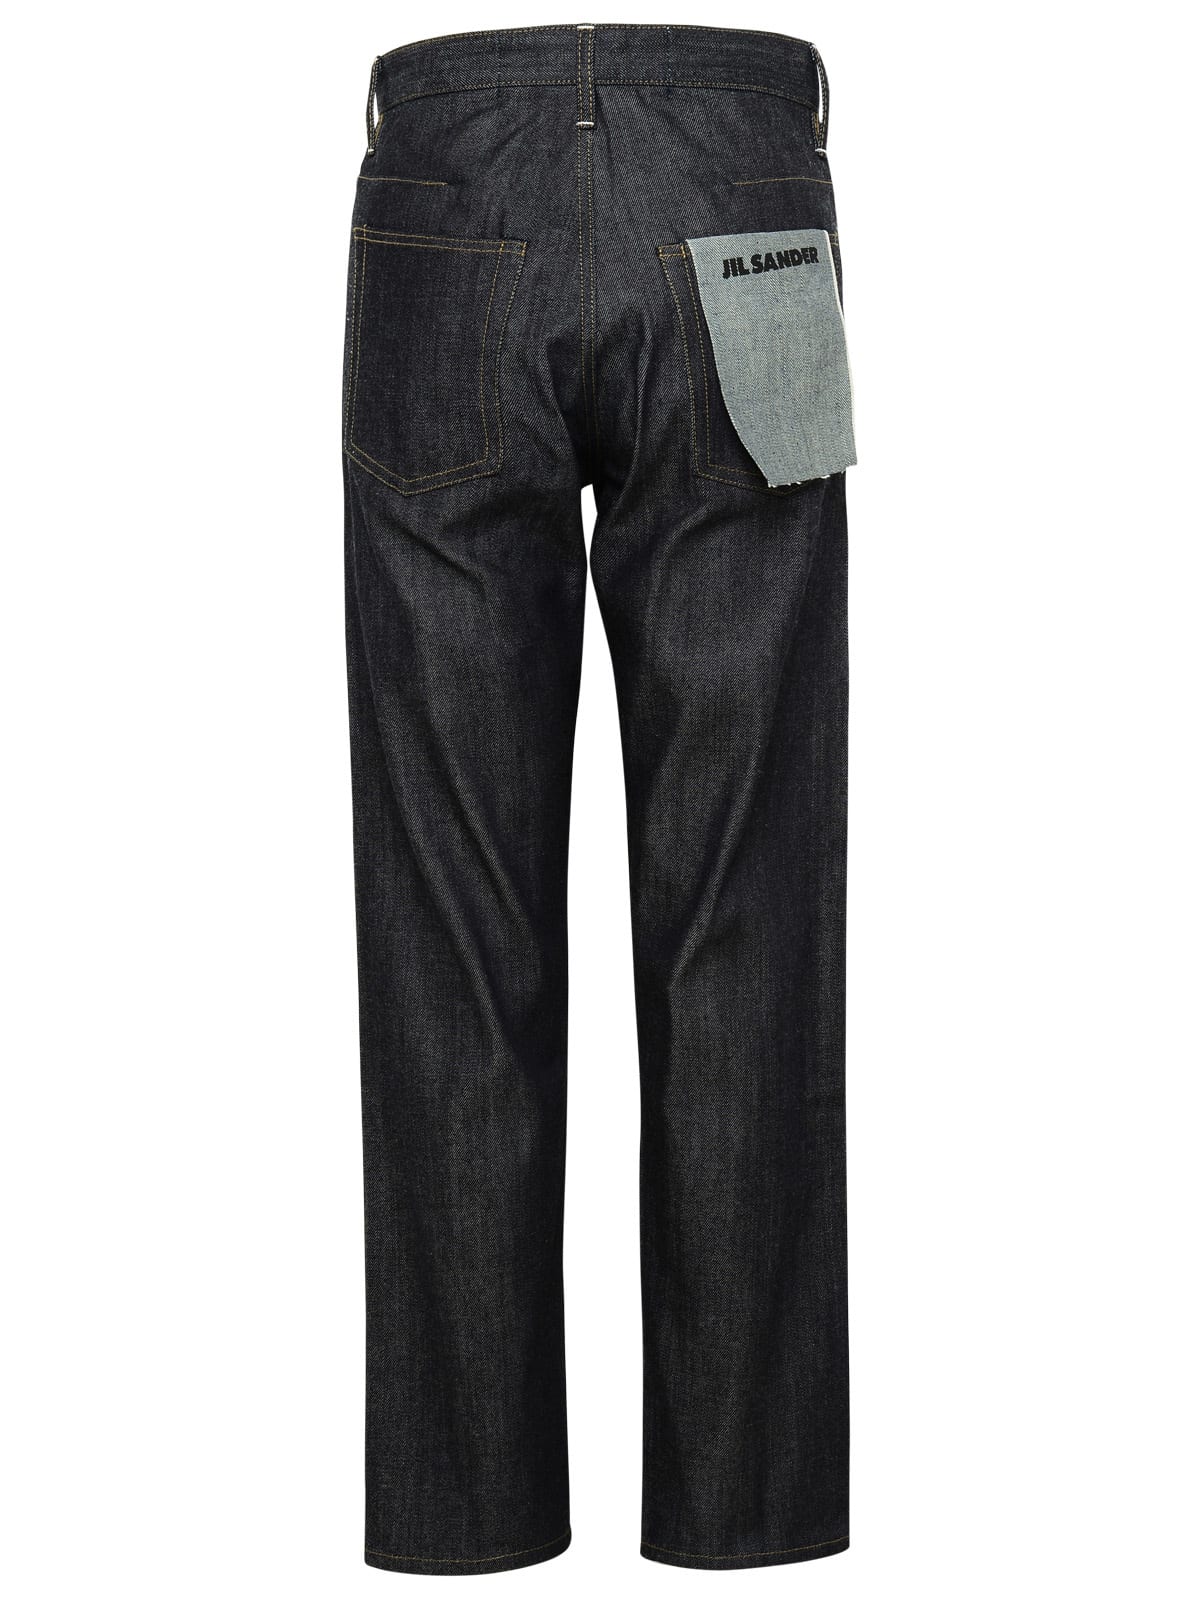 Shop Jil Sander Black Cotton Jeans